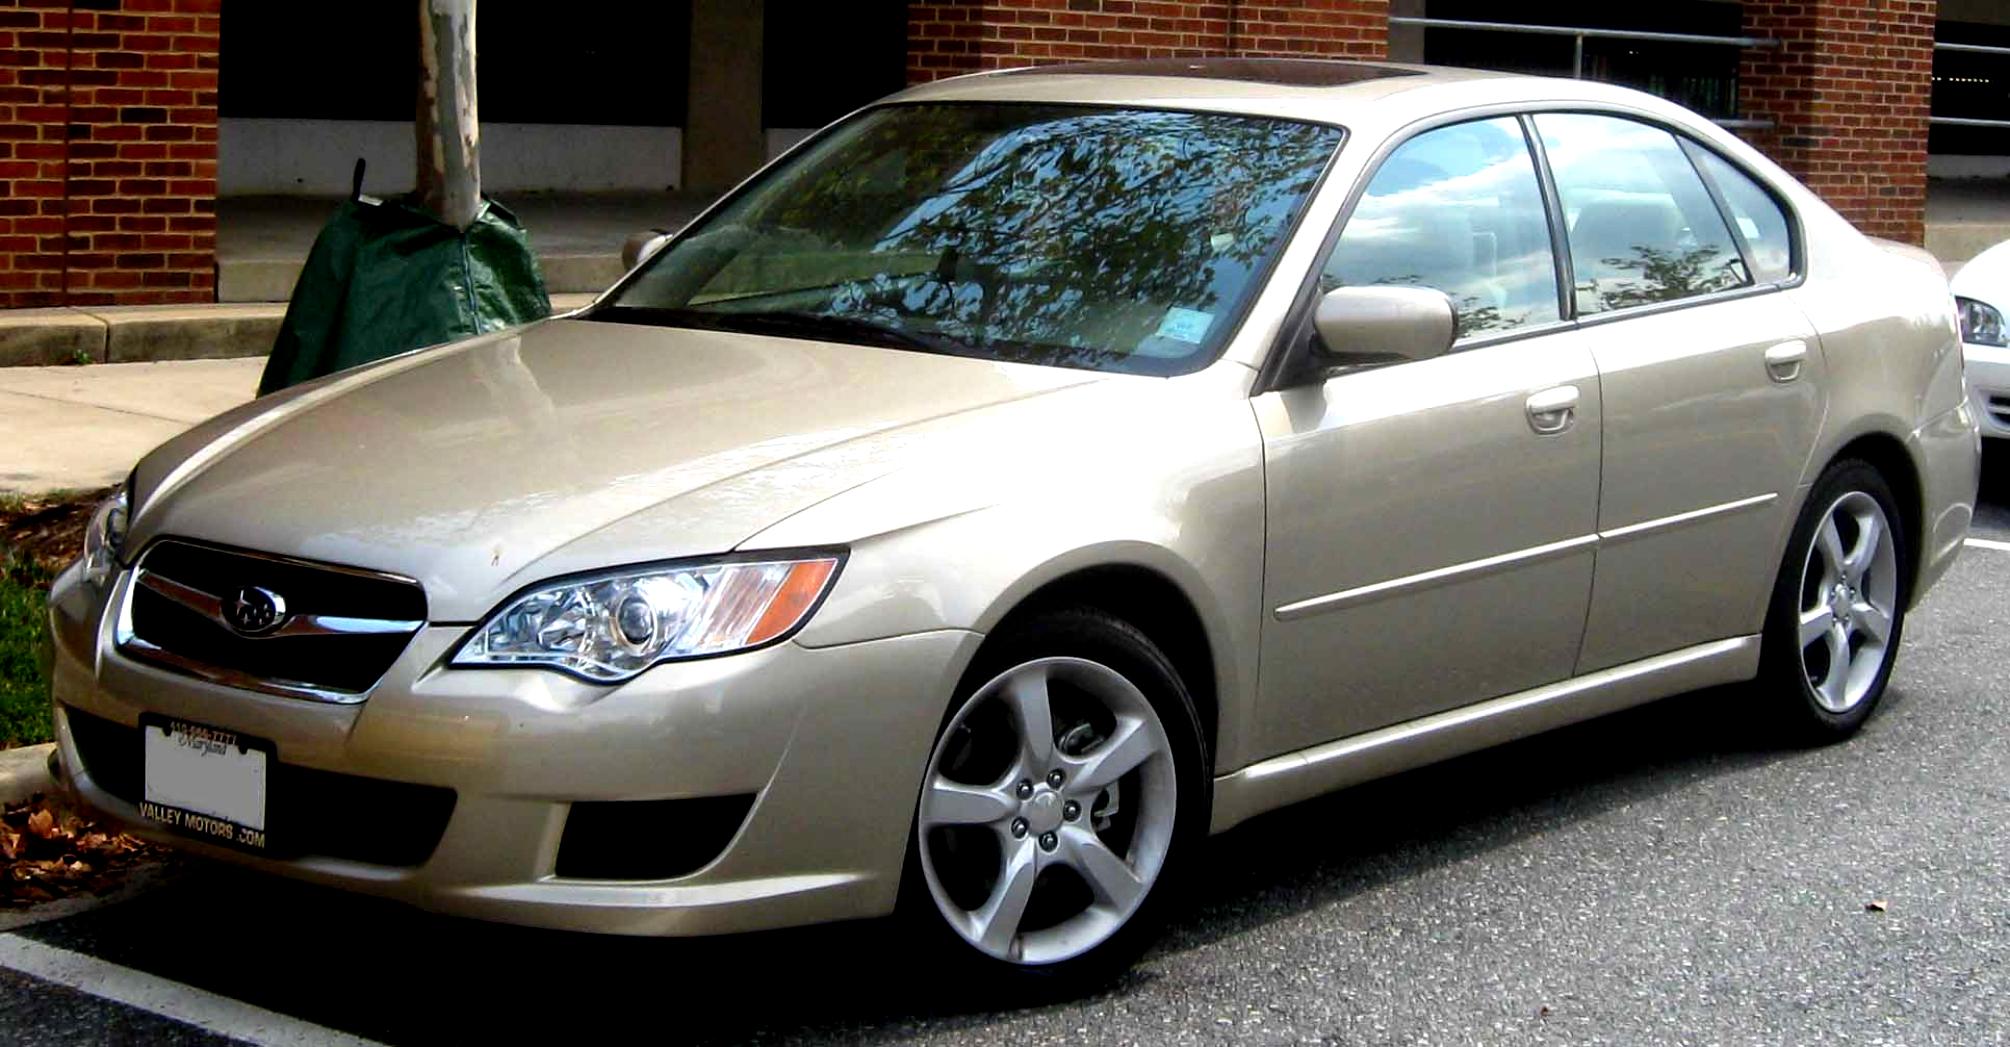 Subaru Liberty Sedan 2008 #1